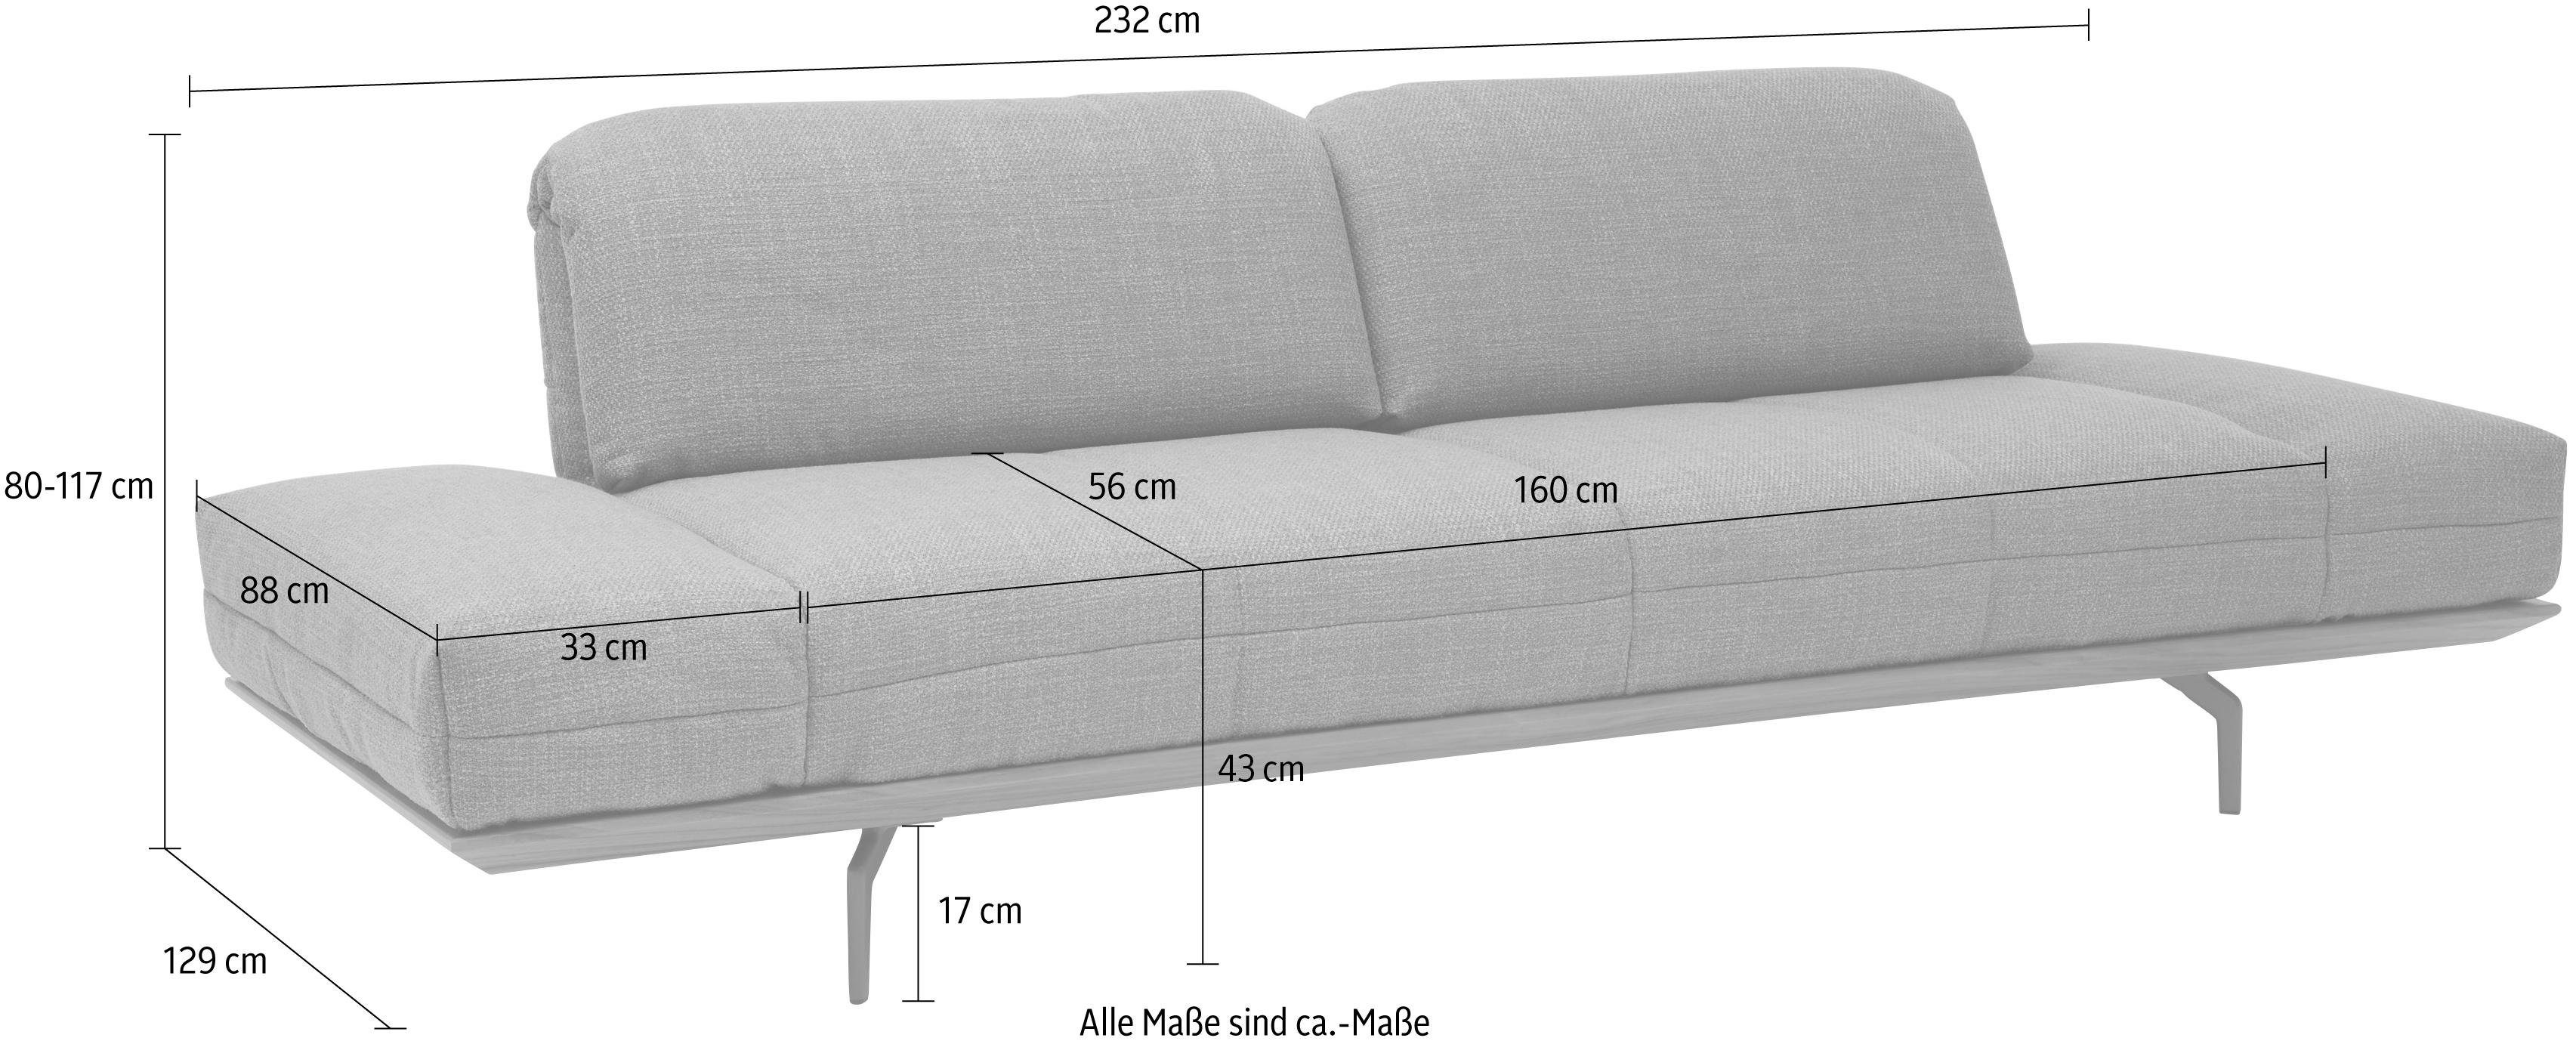 Natur 3-Sitzer Breite 2 hs.420, 232 Eiche hülsta in Holzrahmen in Qualitäten, oder cm Nußbaum, sofa